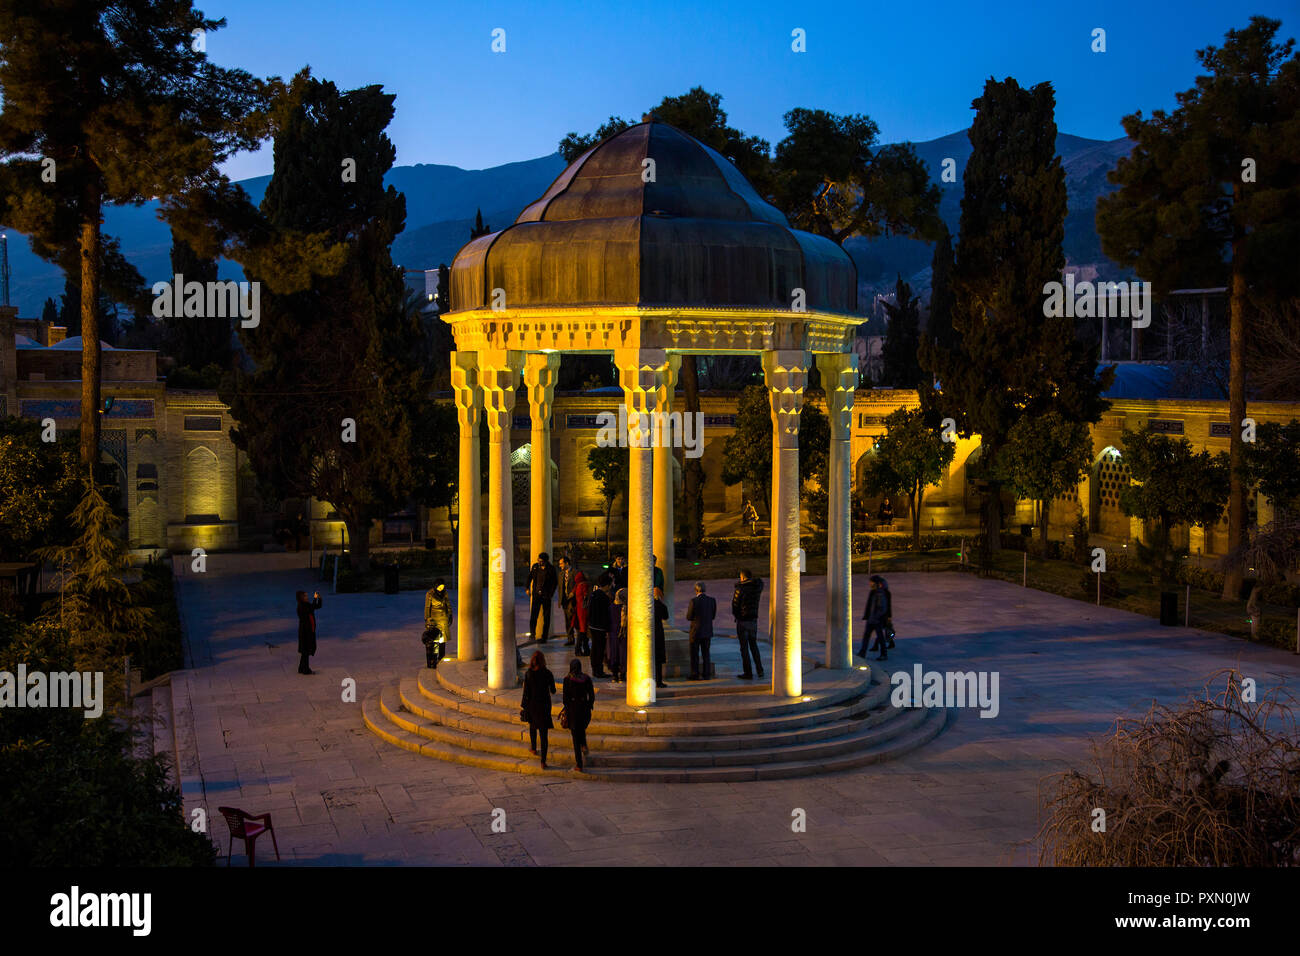 La Tumba de Hafez, poeta persa mausoleo de Hafez en Shiraz, Irán Foto de stock